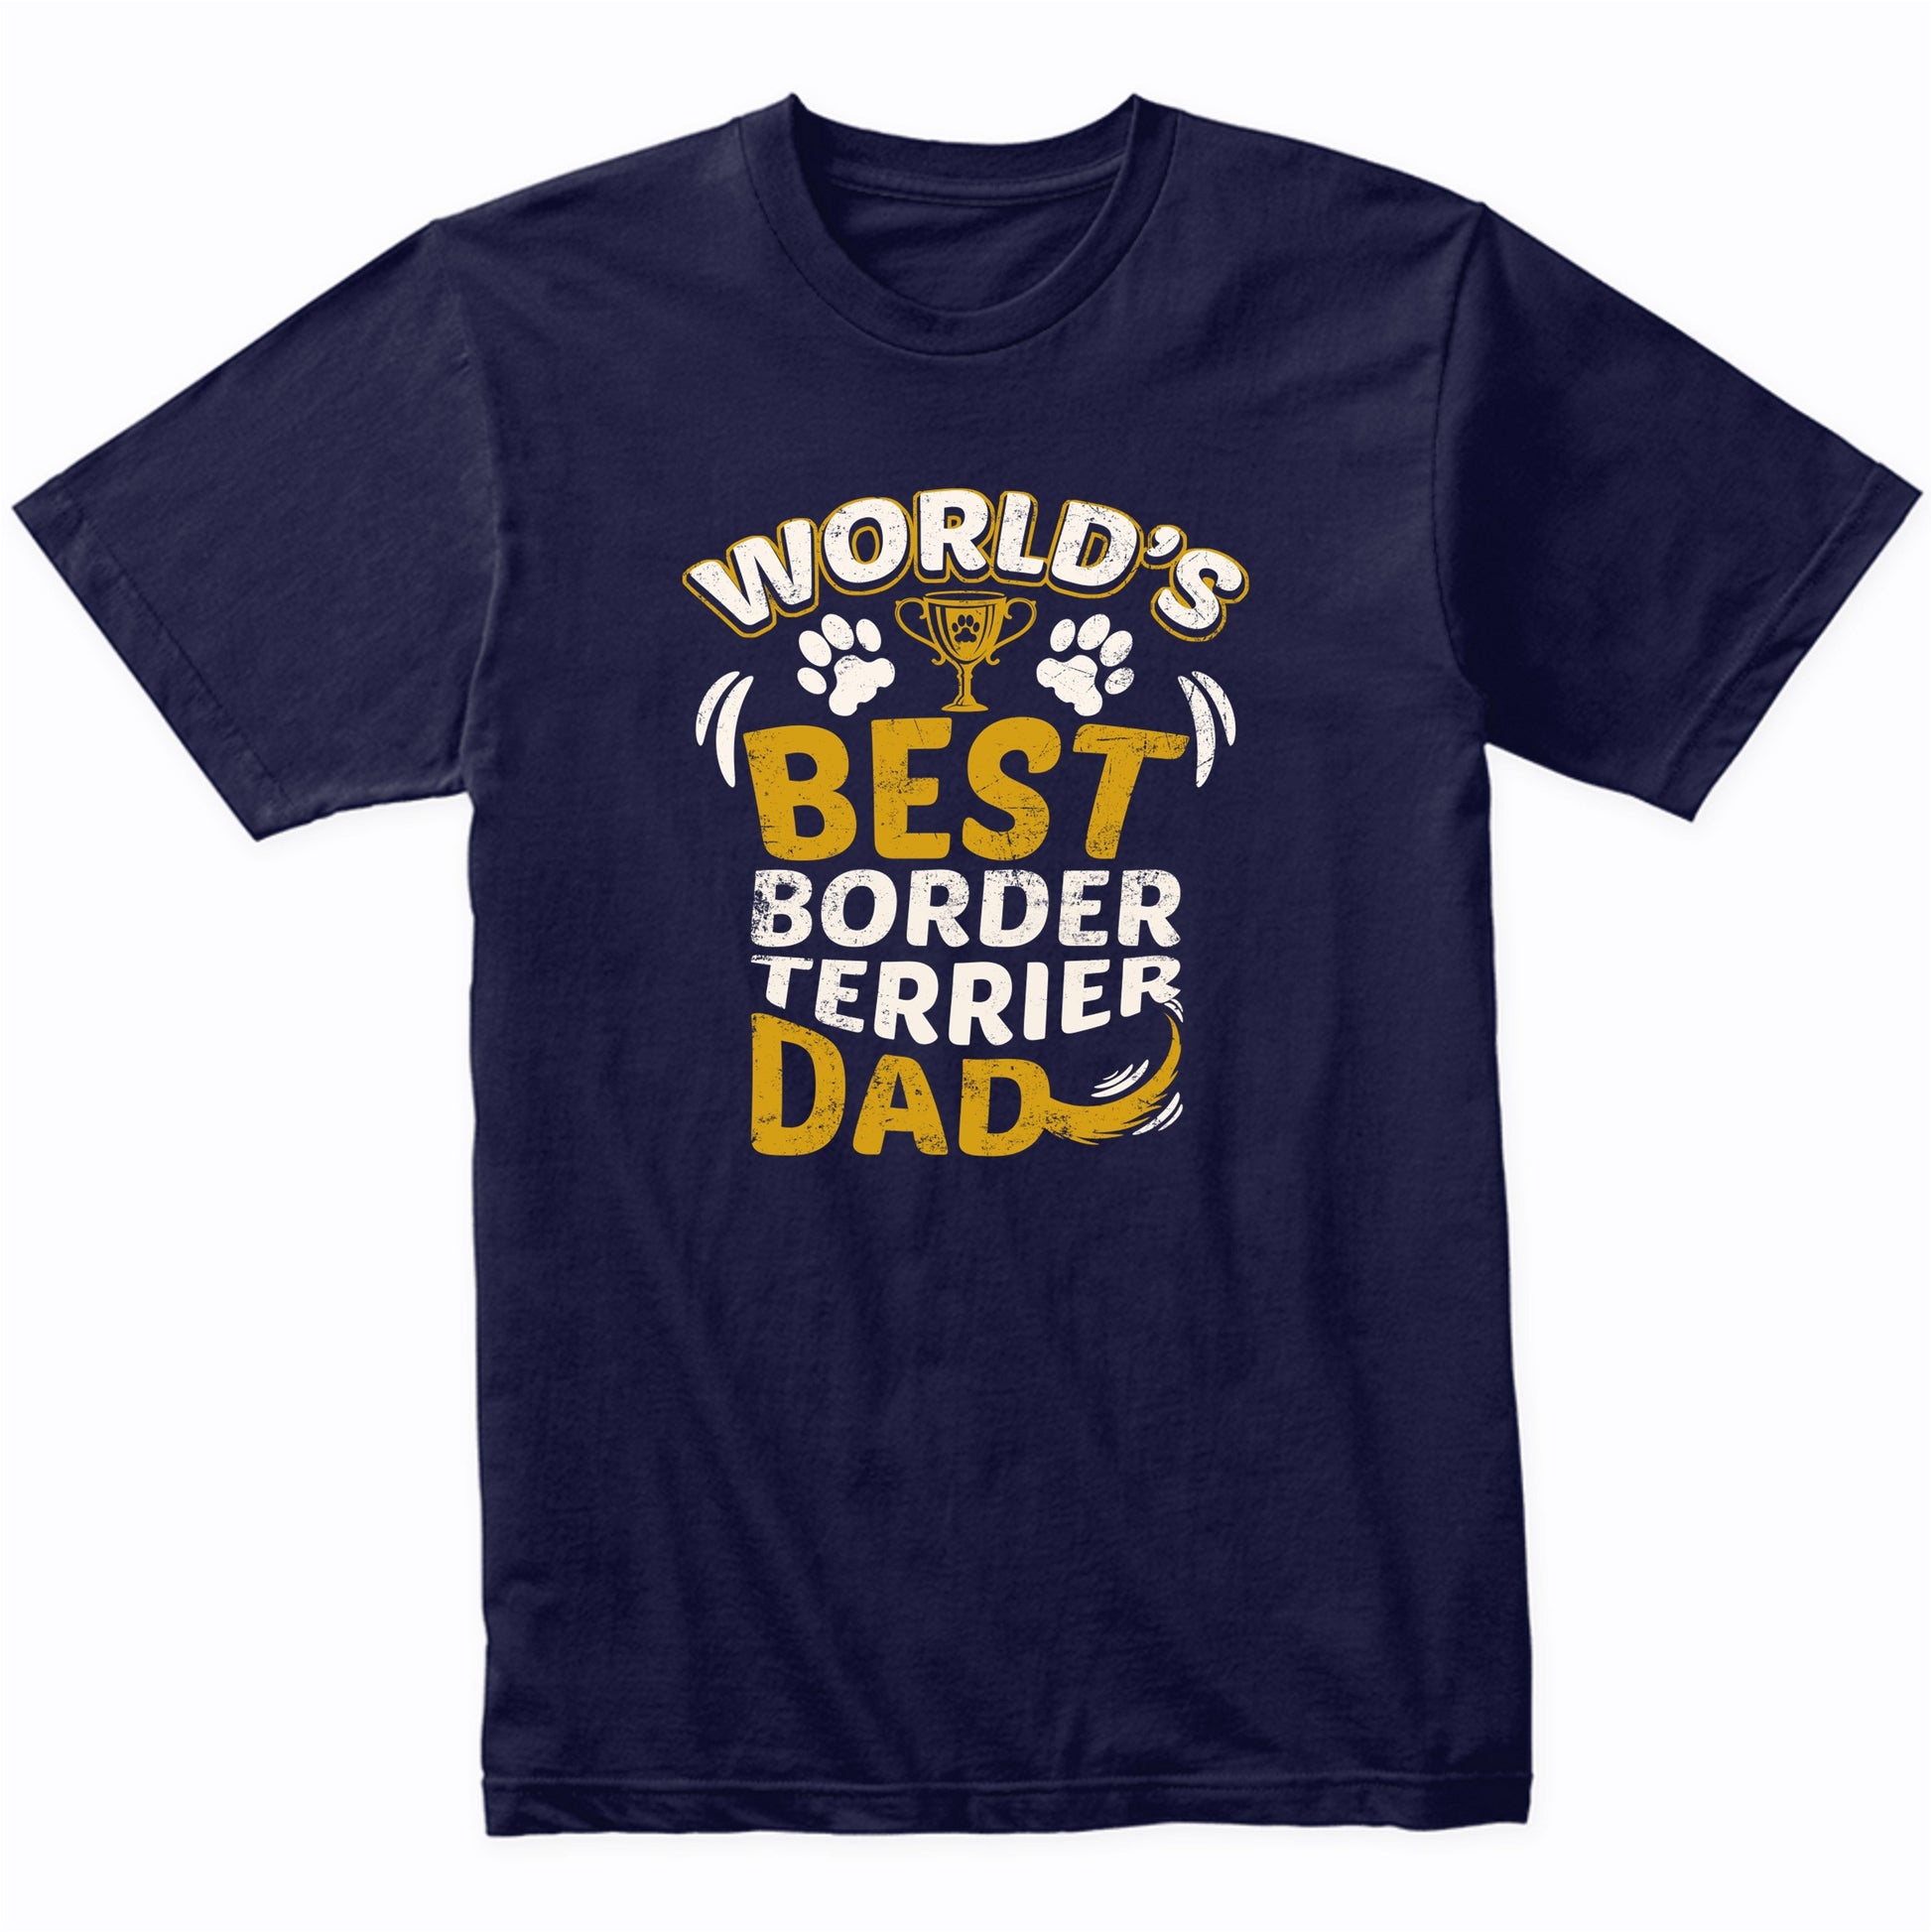 World's Best Border Terrier Dad Graphic T-Shirt